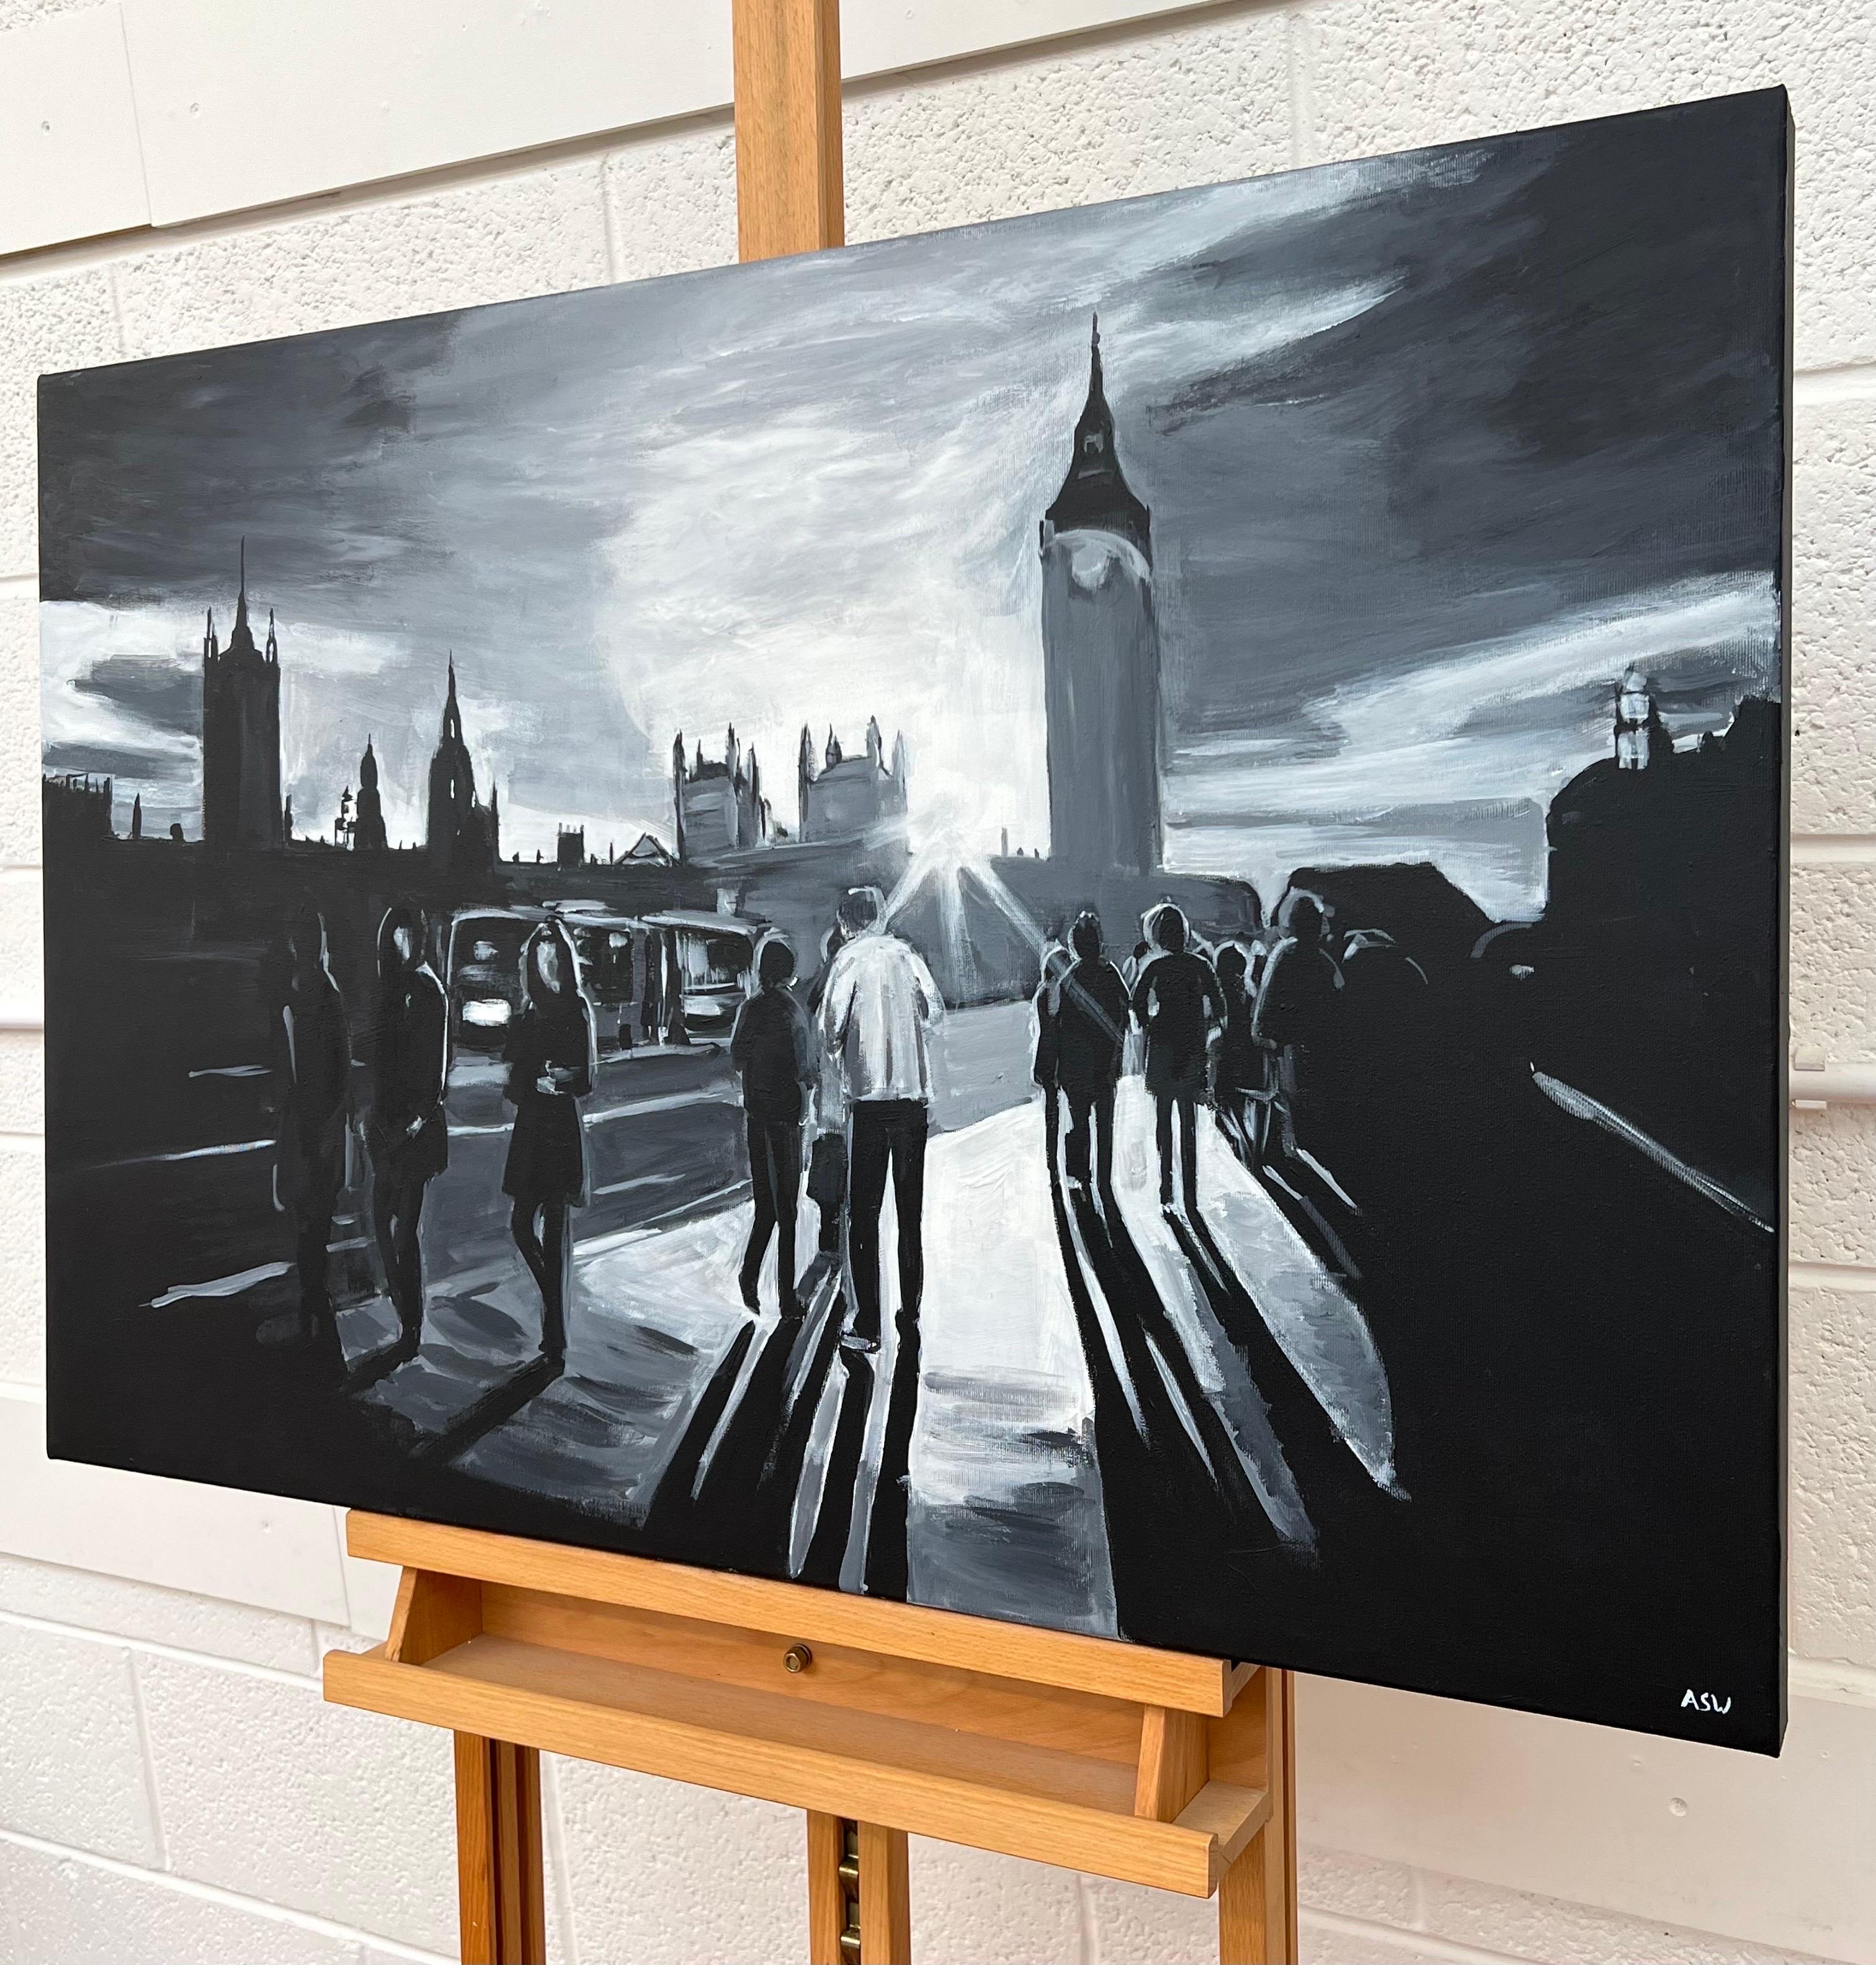 Schwarz-Weiß-Gemälde von Figuren an der Westminster Bridge in London - ein einzigartiges Original der führenden britischen Künstlerin für Stadtlandschaften und Stadtbilder, Angela Wakefield. 

Kunst misst 36 x 24 Zoll

Angela Wakefield war zweimal